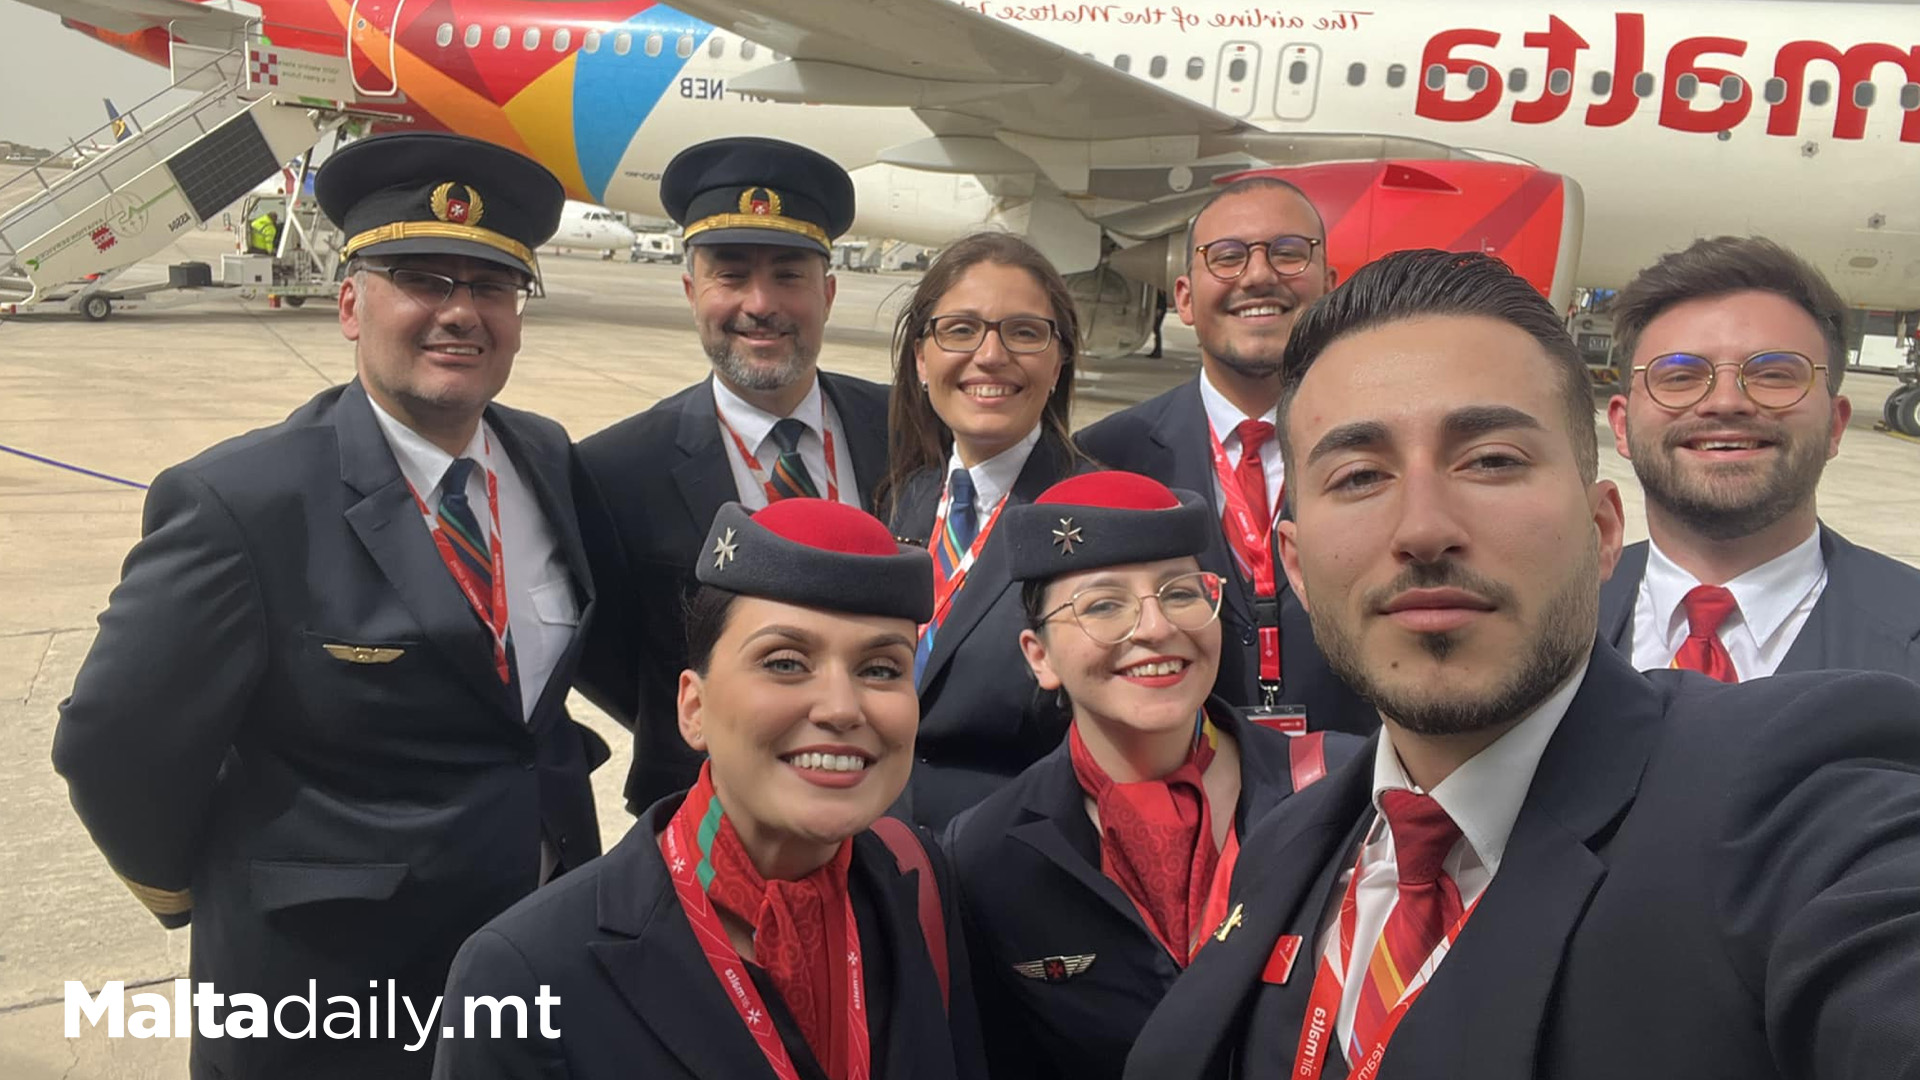 Flight Attendants Bid Farewell To Air Malta